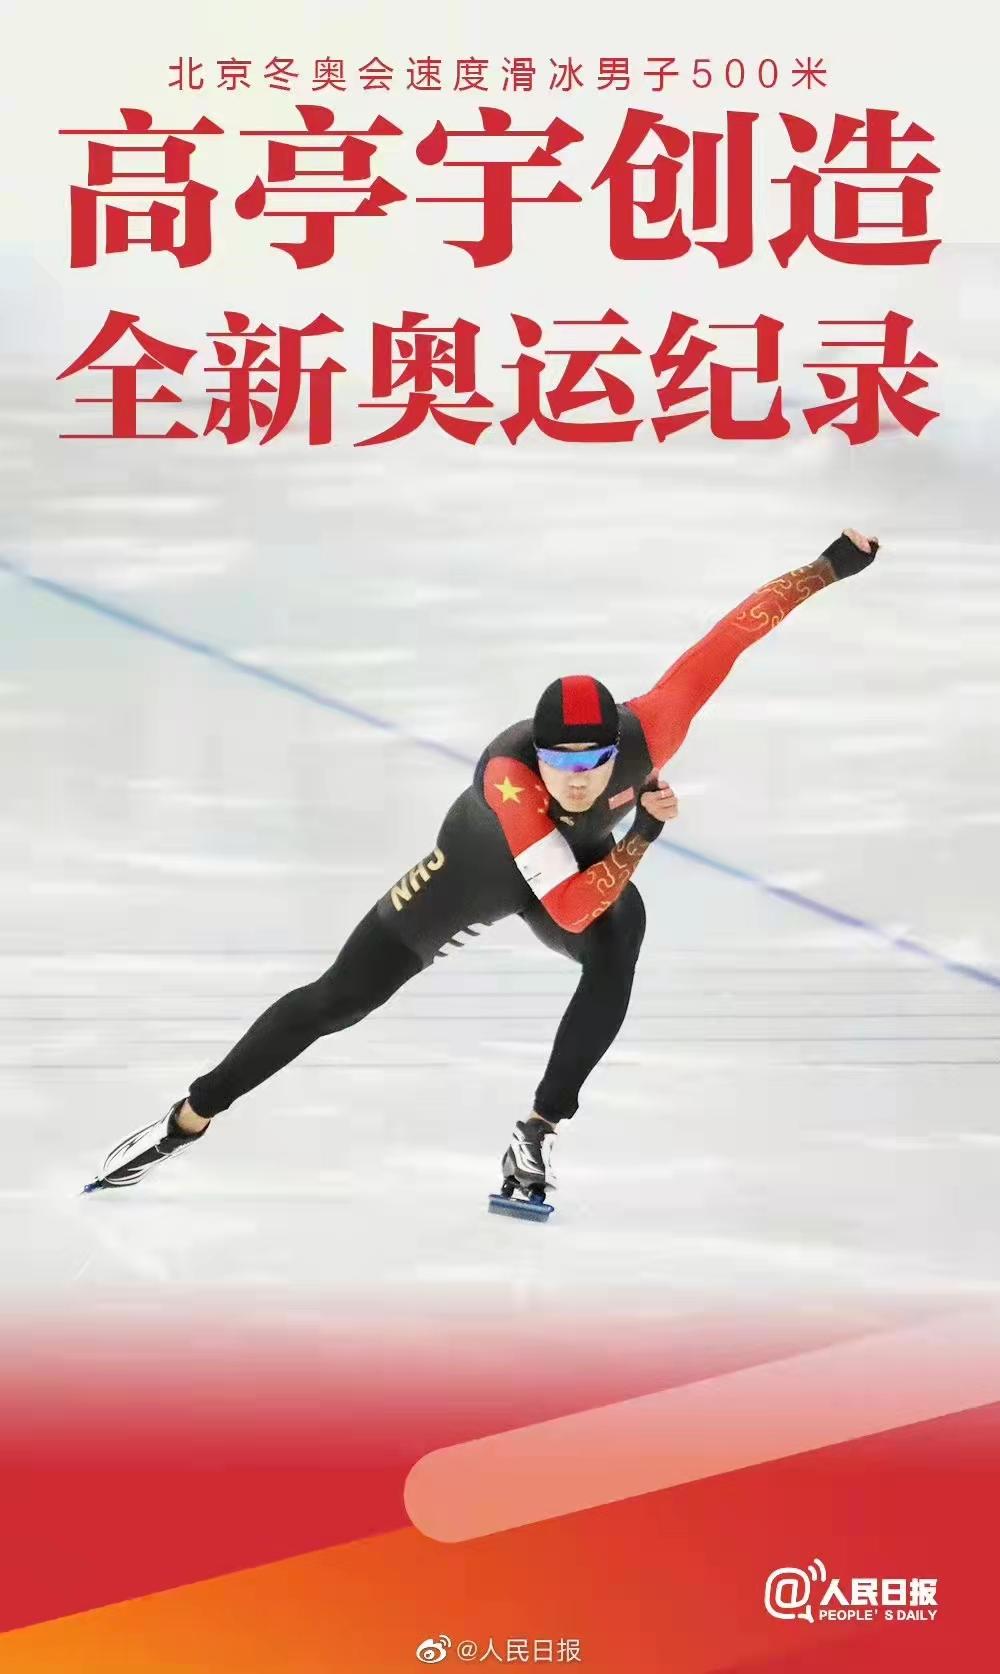 2022 北京冬奥会速度滑冰男子 500 米高亭宇破奥运纪录夺得中国第 4